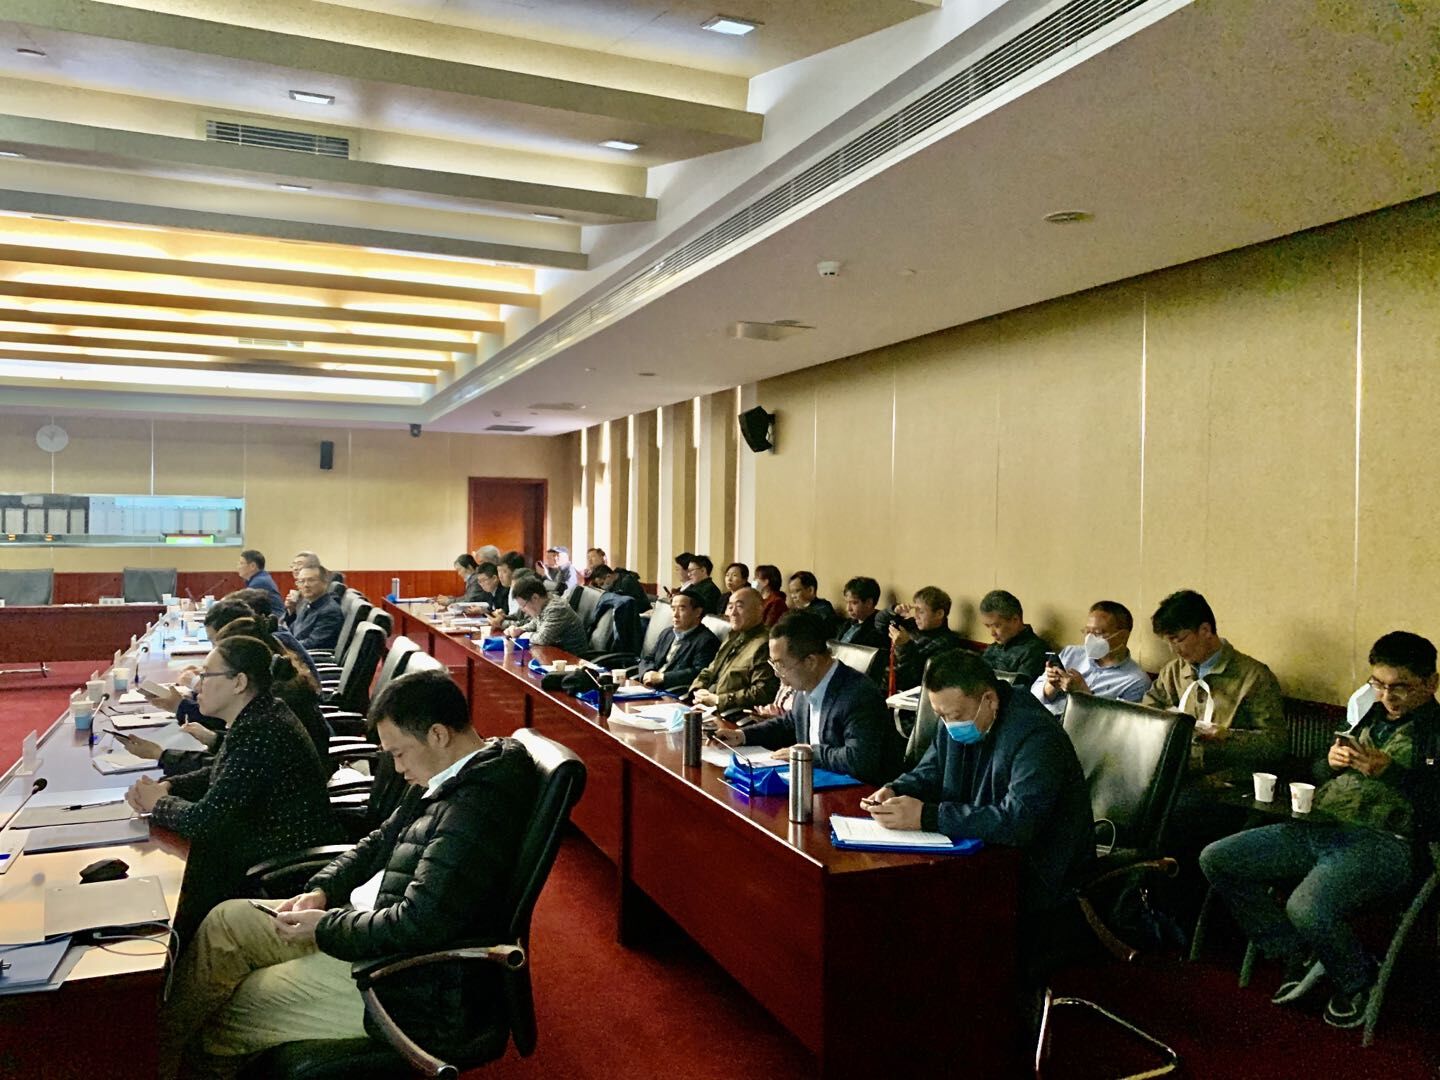 中國真空學會第九屆理事會第二次理事會暨第四次常務理事會在北京召開